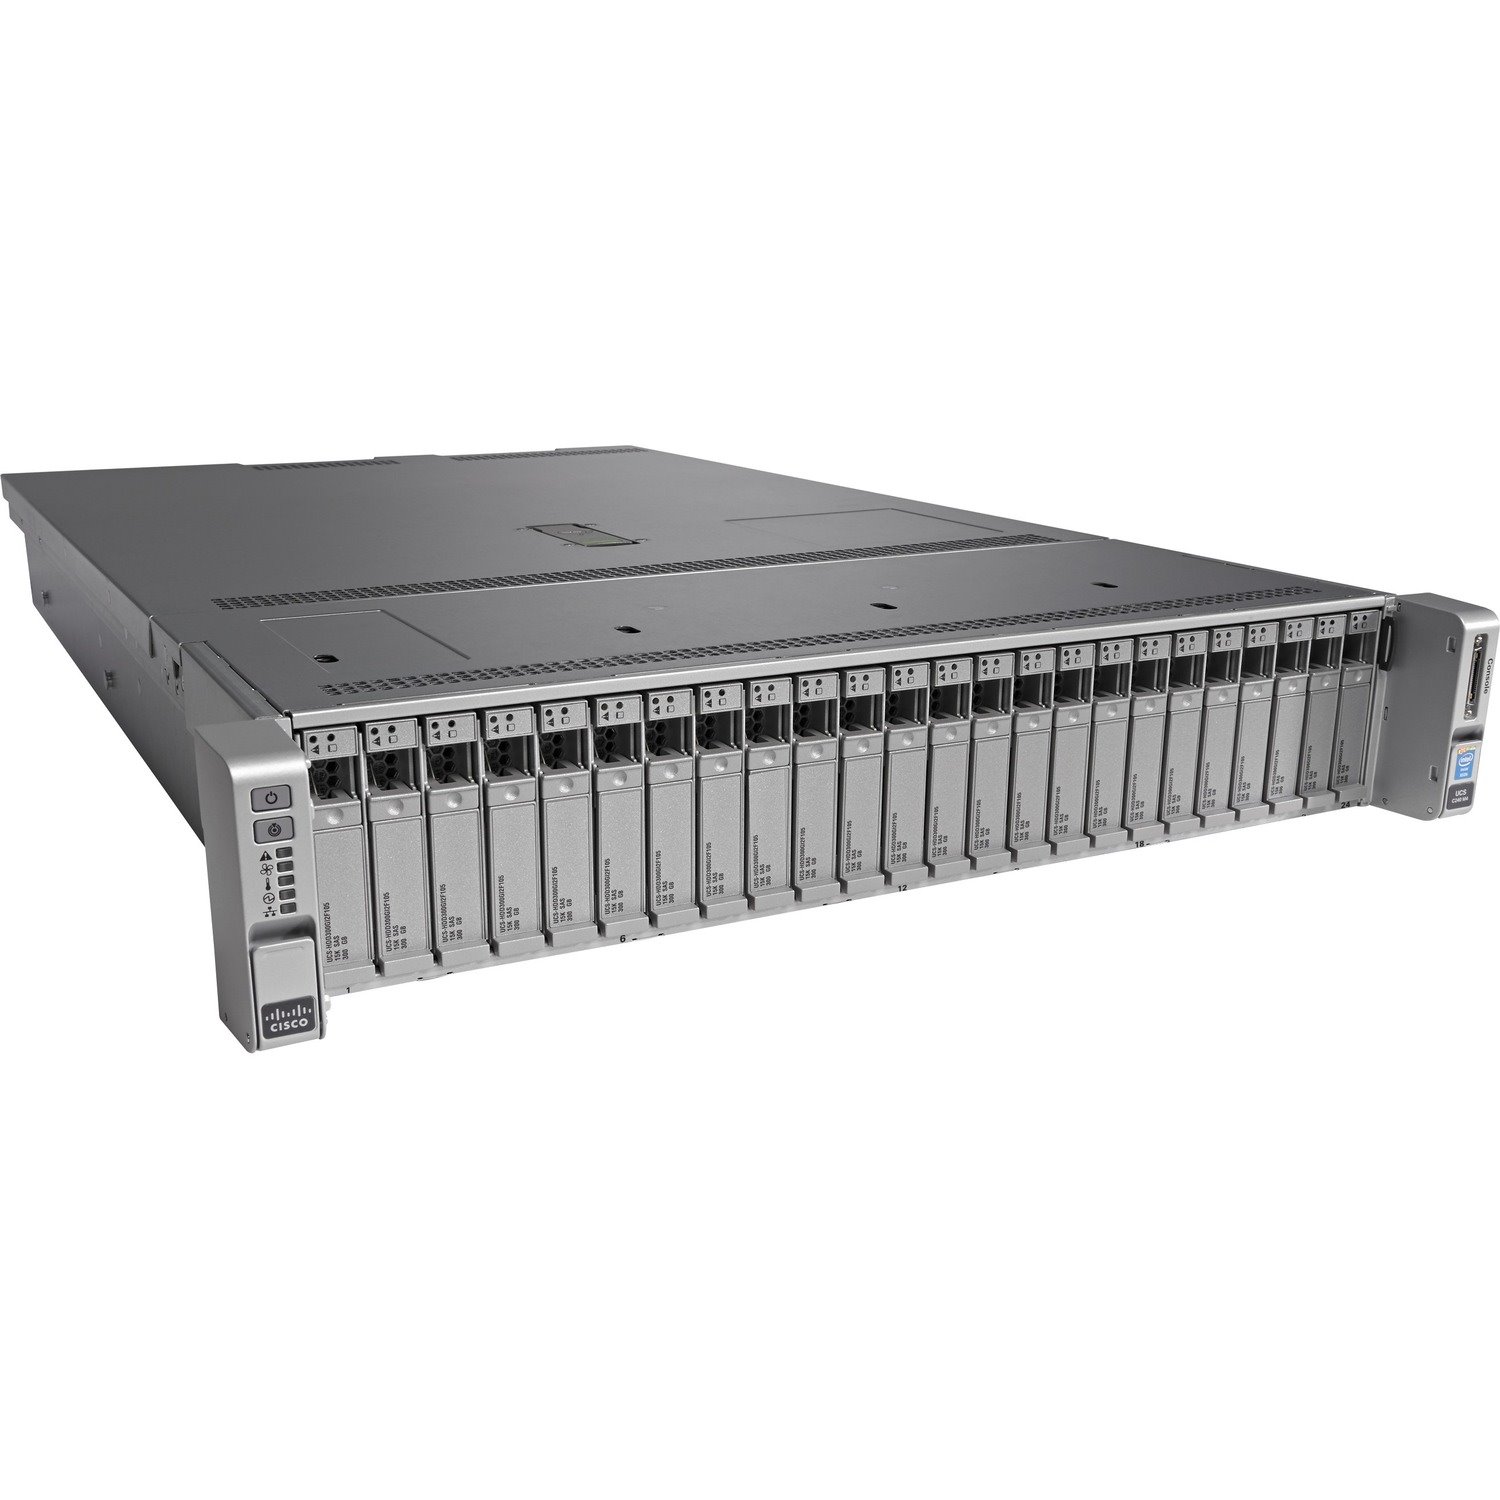 Cisco C240 M4 2U Rack Server - 2 x Intel Xeon E5-2643 v3 3.40 GHz - 256 GB RAM - 12Gb/s SAS, Serial ATA Controller